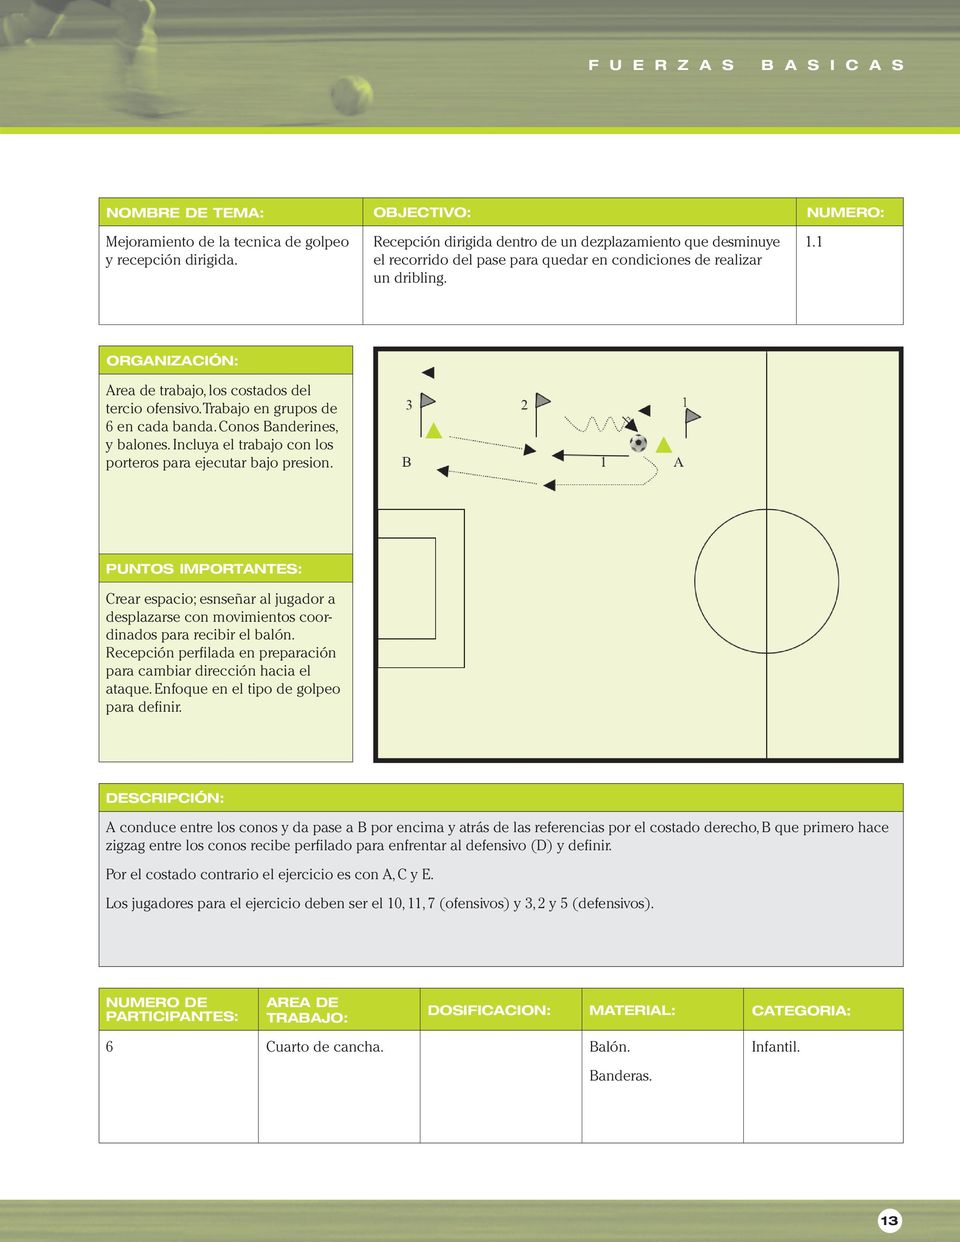 Crear espacio; esnseñar al jugador a desplazarse con movimientos coordinados para recibir el balón. Recepción perfilada en preparación para cambiar dirección hacia el ataque.